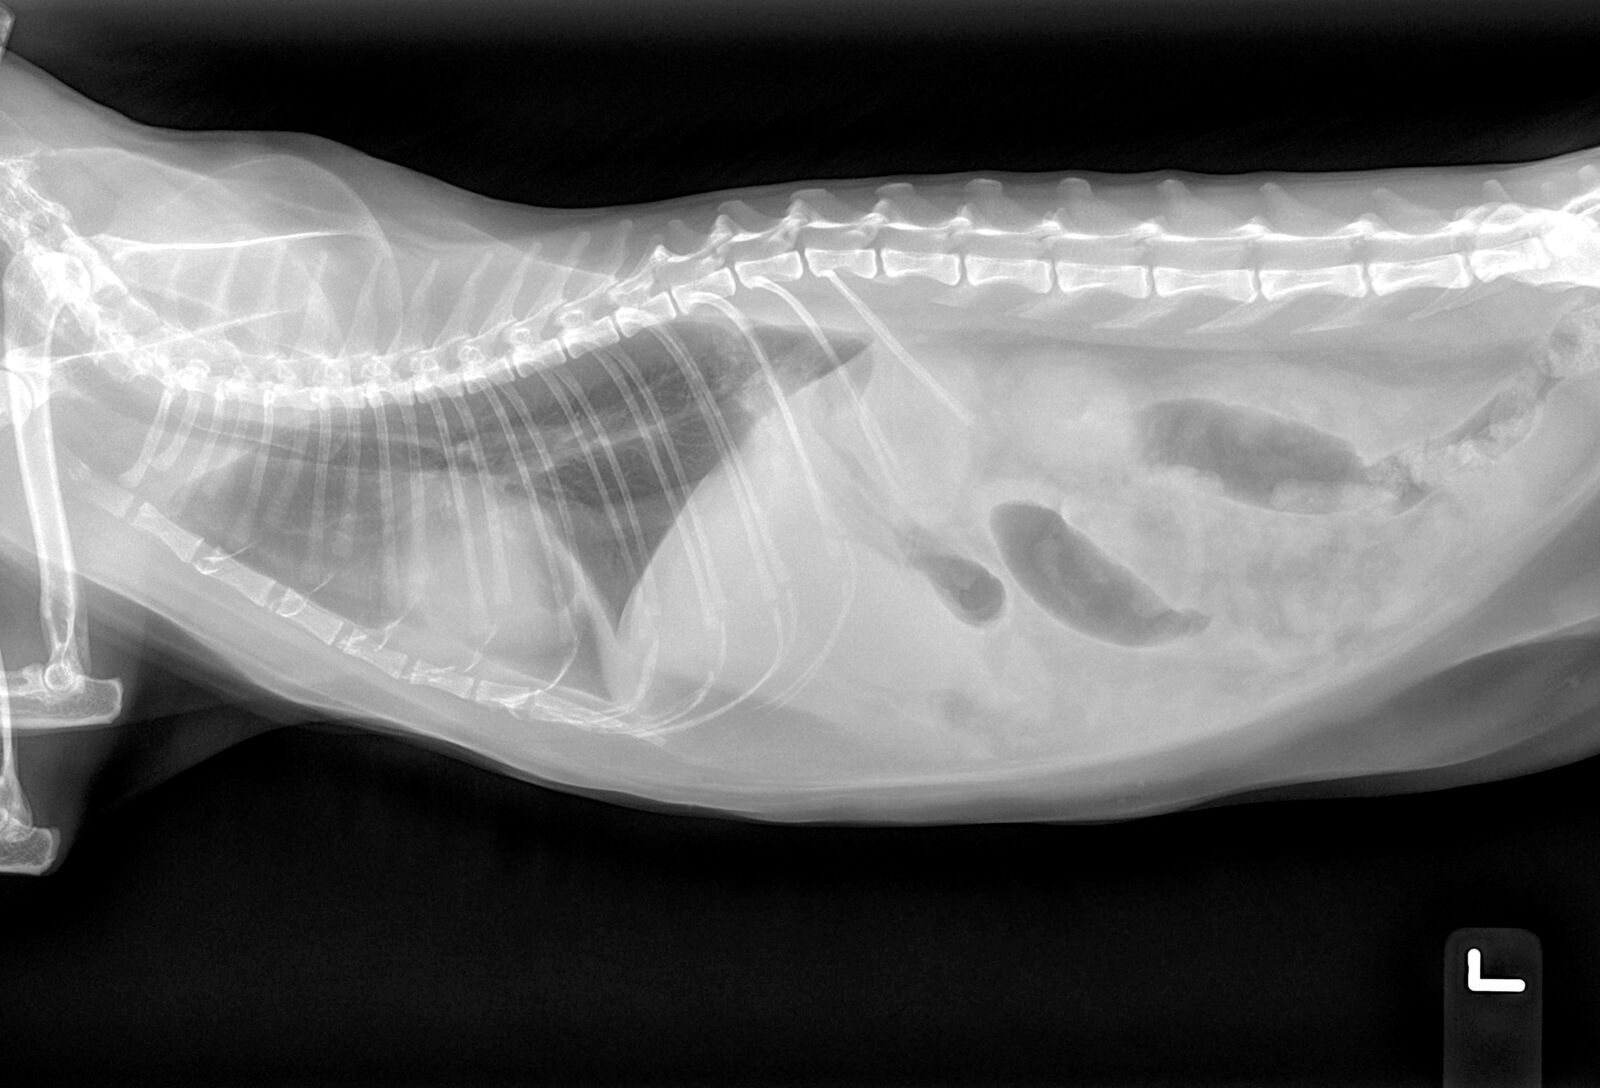 Radiografia laterale di un gatto che mostra la perdita di dettaglio della sierosa nella cavità addominale. Non sono apprezzabili segni di versamento pleurico, cardiomegalia o epatomegalia evidente.